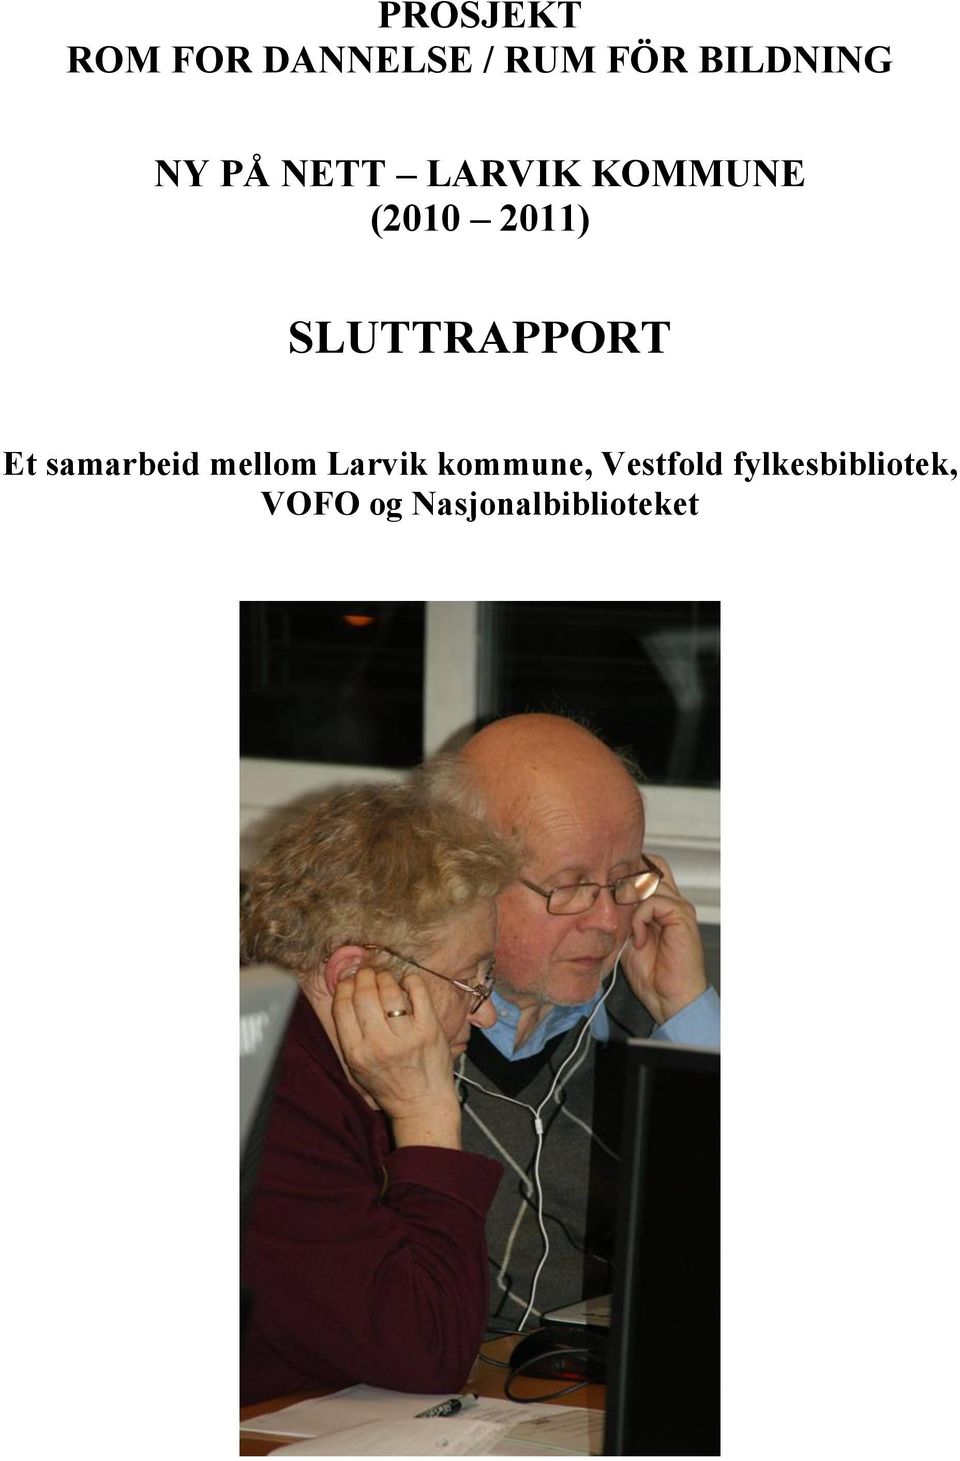 SLUTTRAPPORT Et samarbeid mellom Larvik